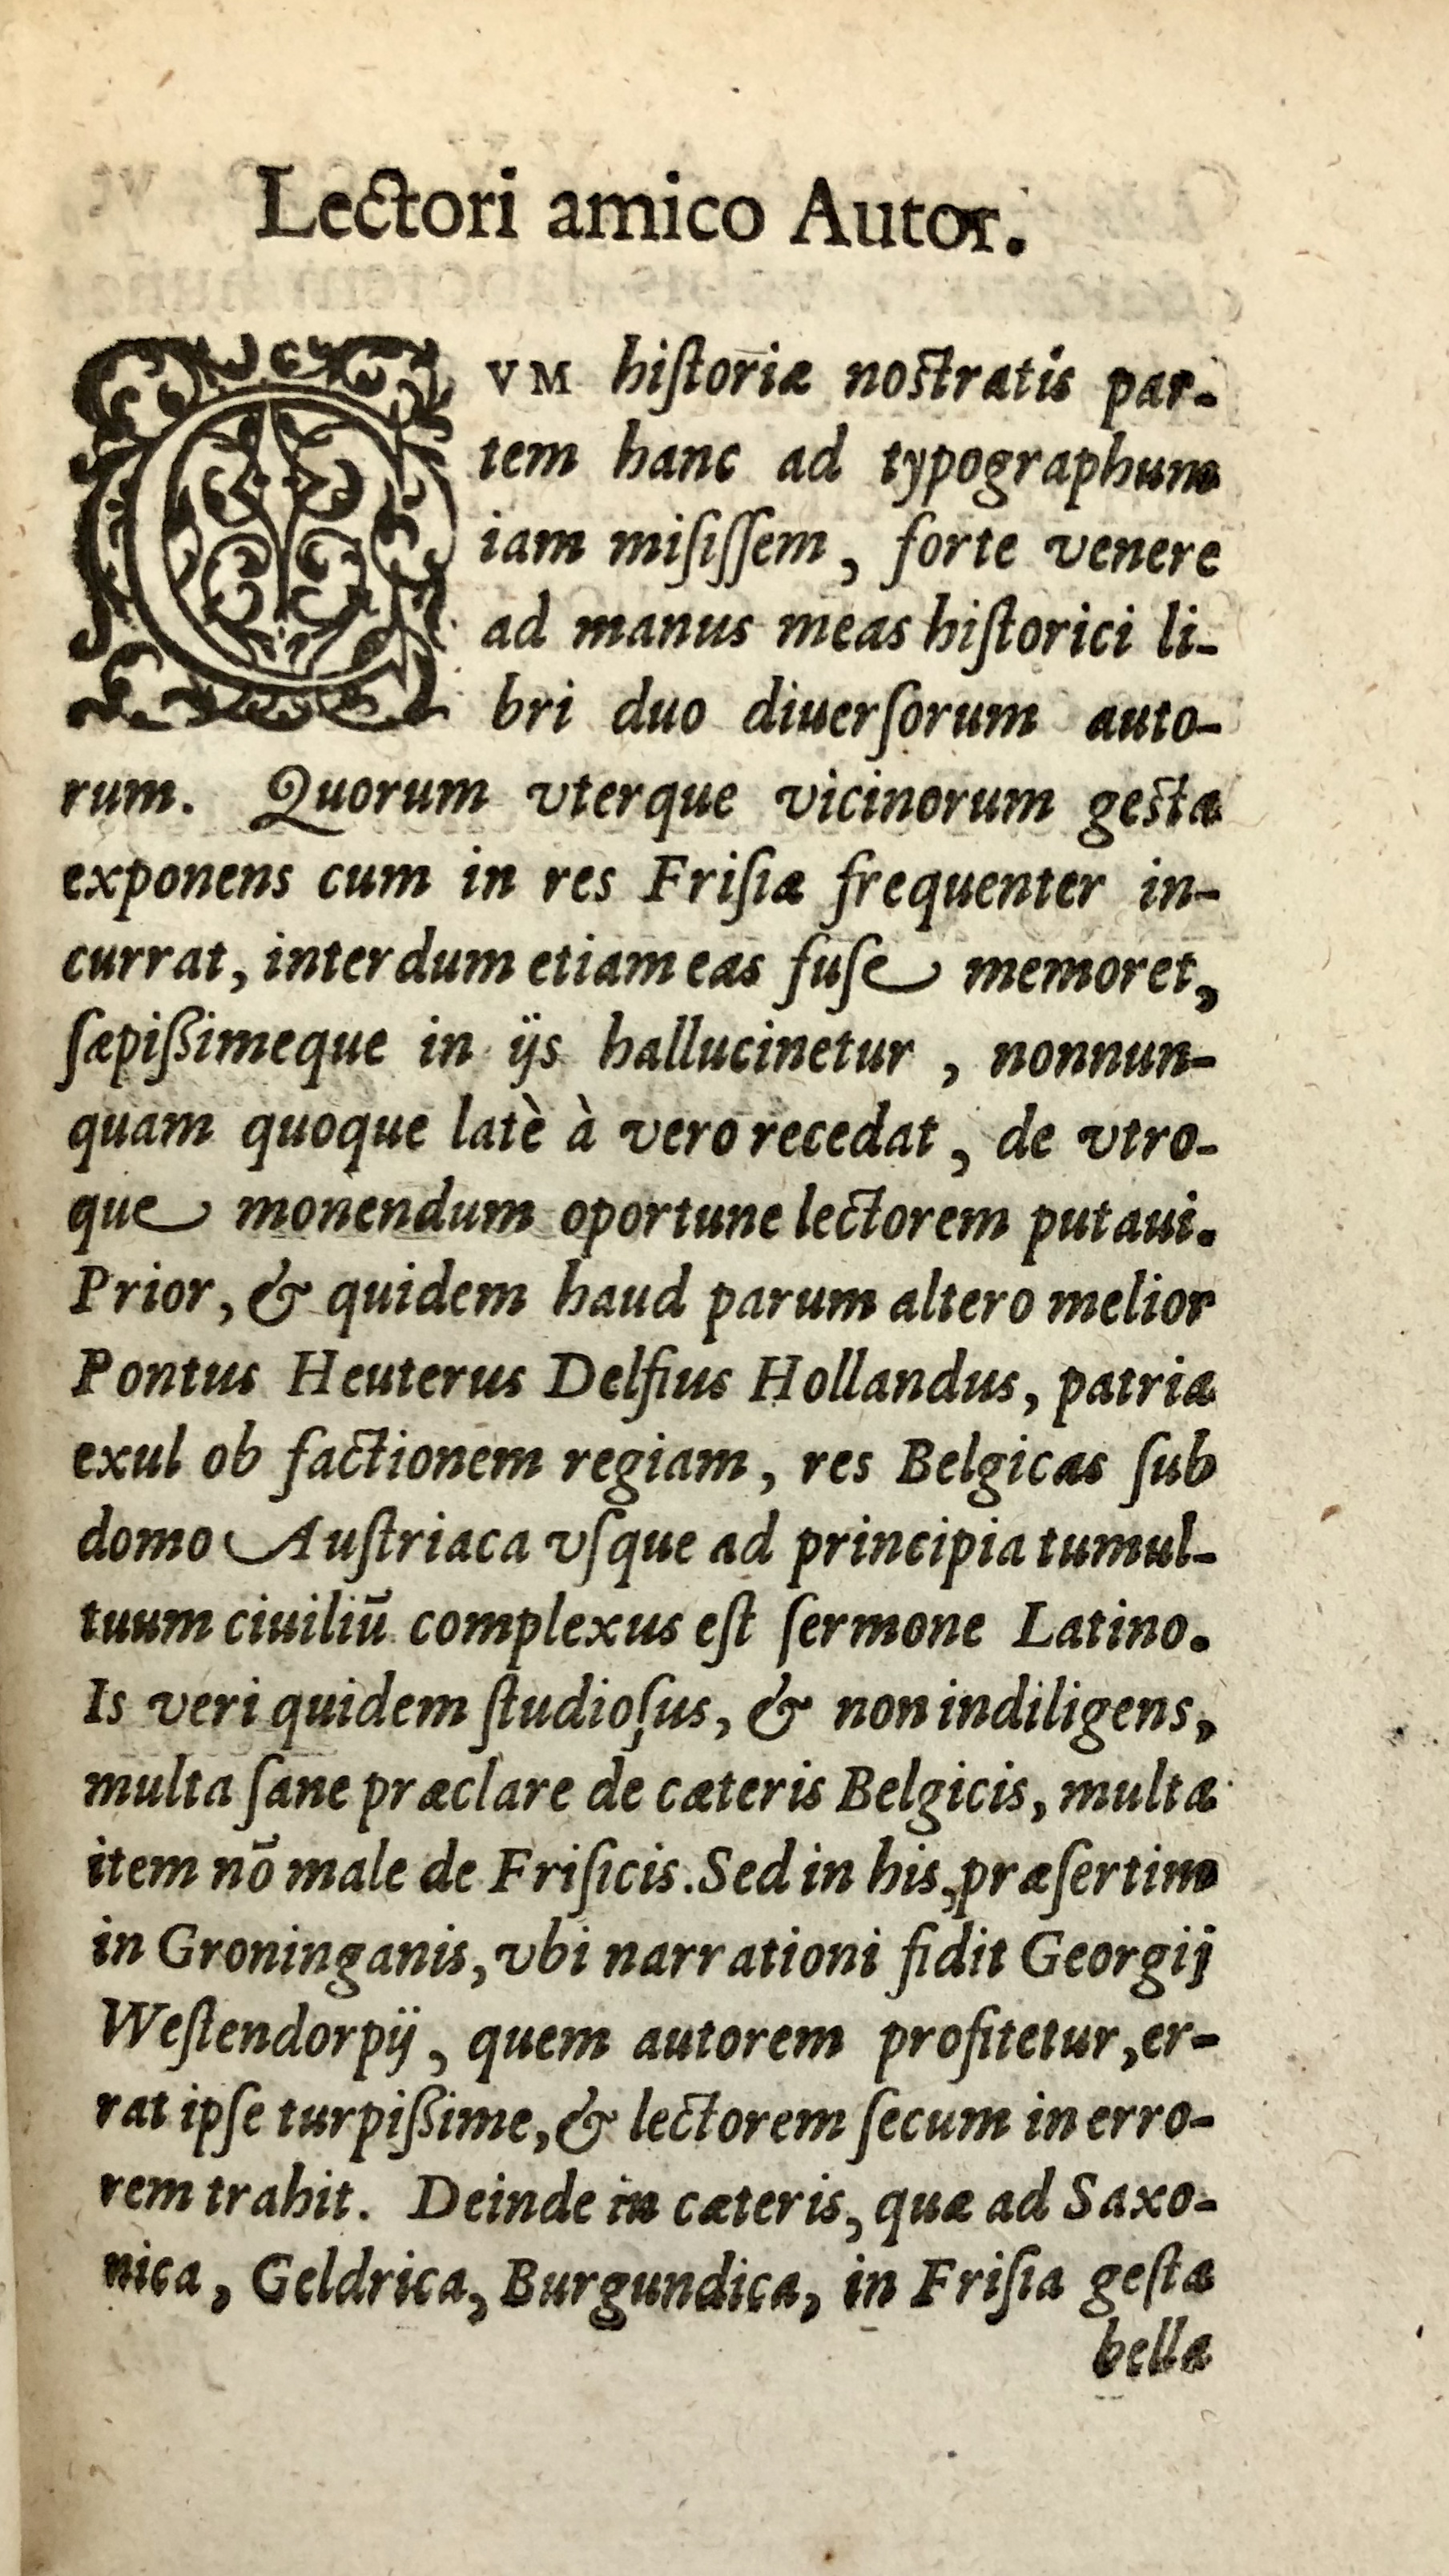 3. Ubbo Emmius, Rerum Frisicarum historia (Leiden 1599), fol. *7r03. Ubbo Emmius, Rerum Frisicarum historia (Leiden 1599), fol. *7r03. Ubbo Emmius, Rerum Frisicarum historia (Leiden 1599), fol. *7r